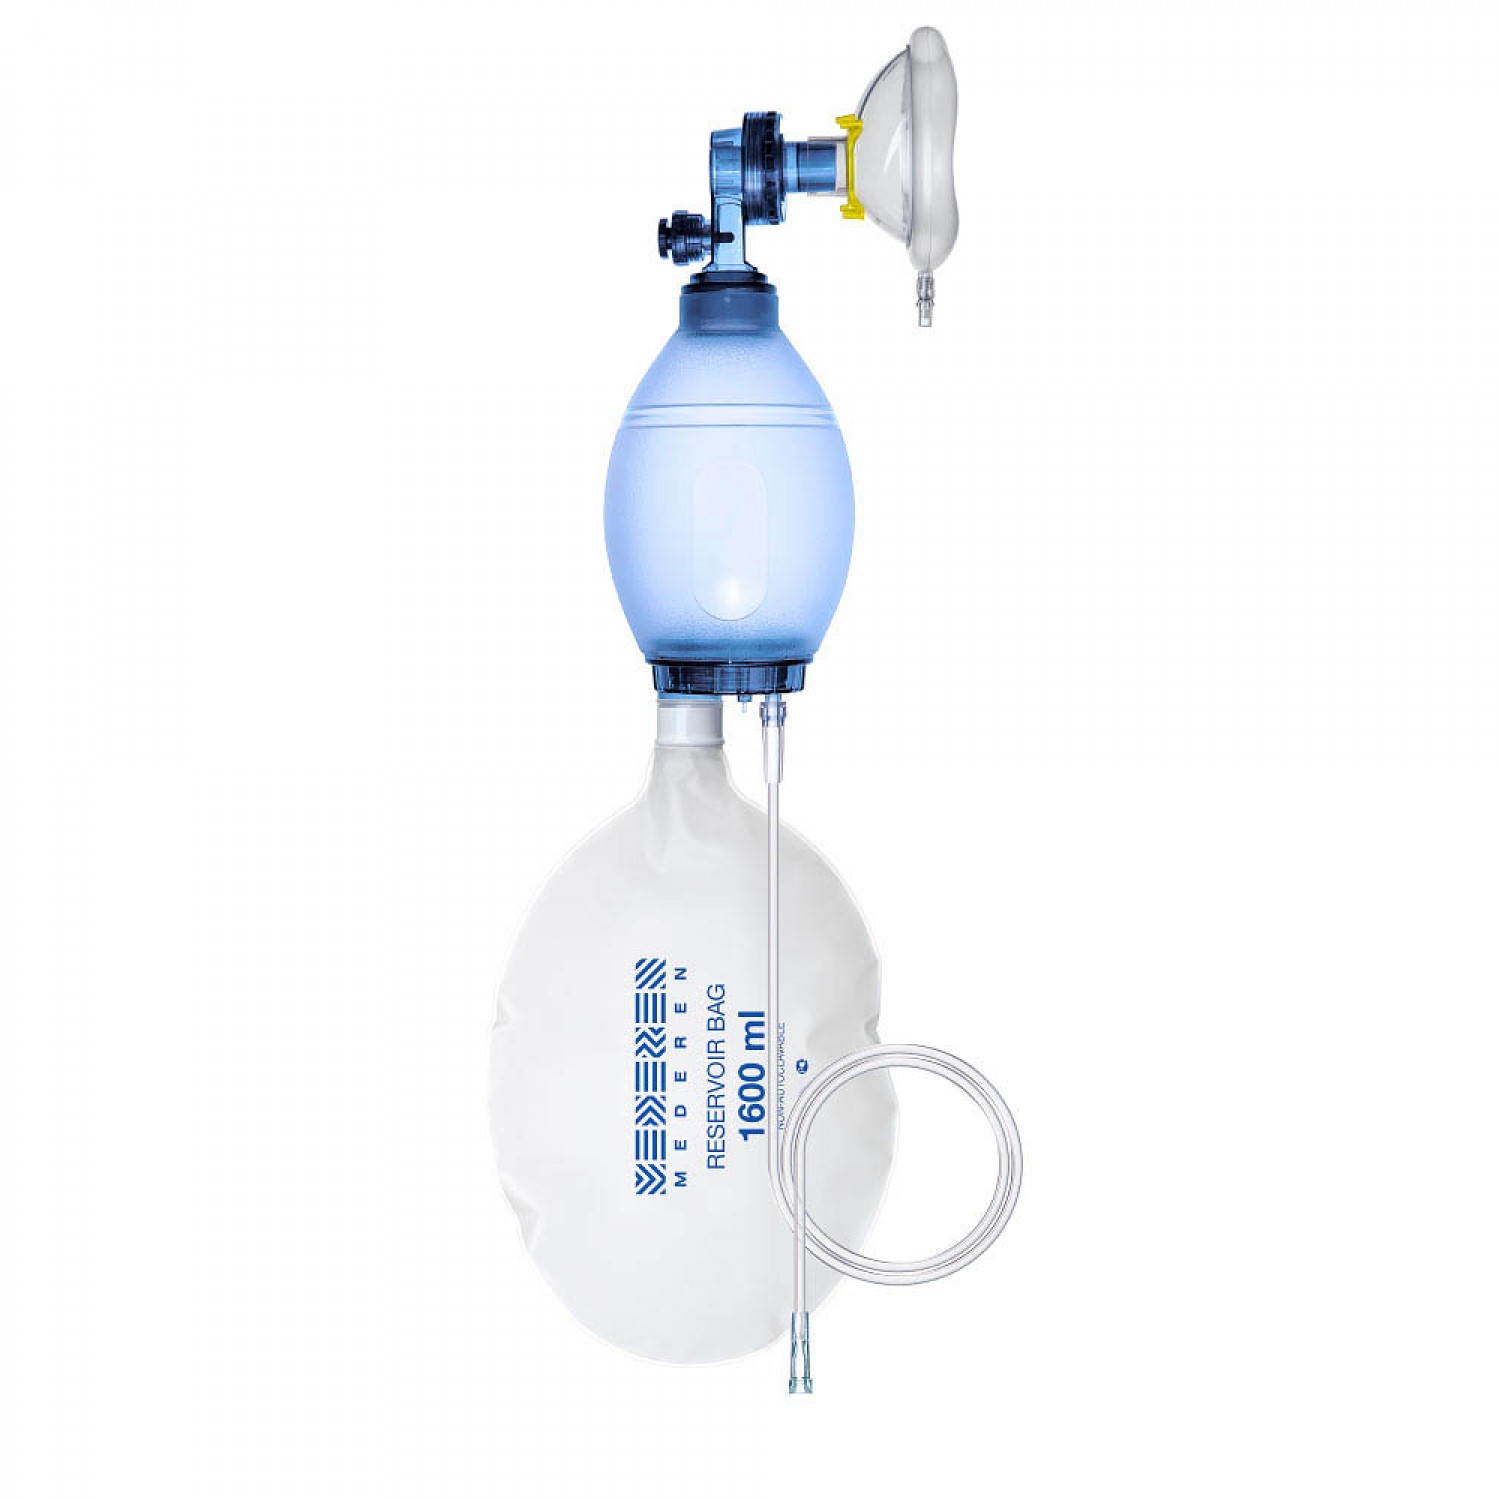 Manual Artificial lung ventilation device (Ambu Bag) 14